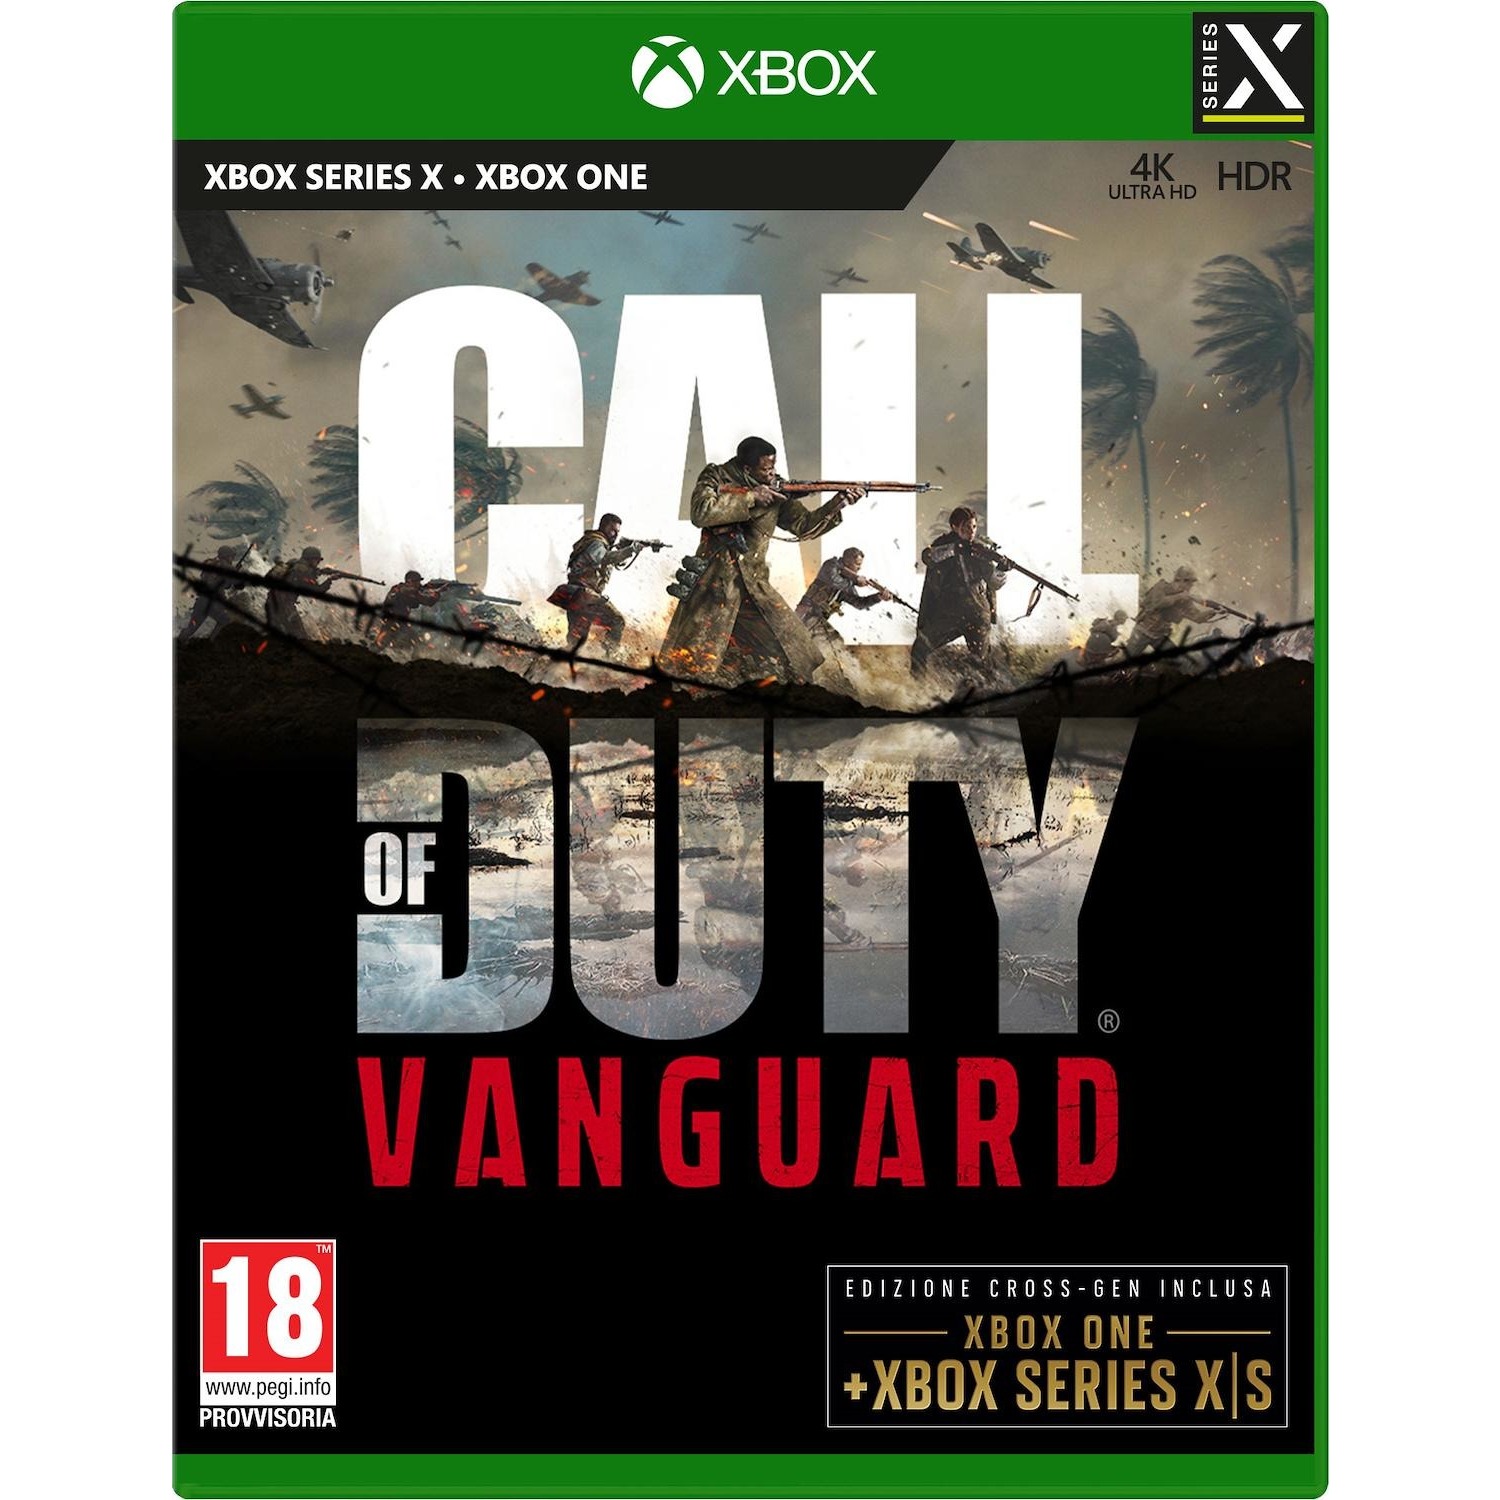 Immagine per Gioco XBOX Series X Call Of Duty Vanguard da DIMOStore